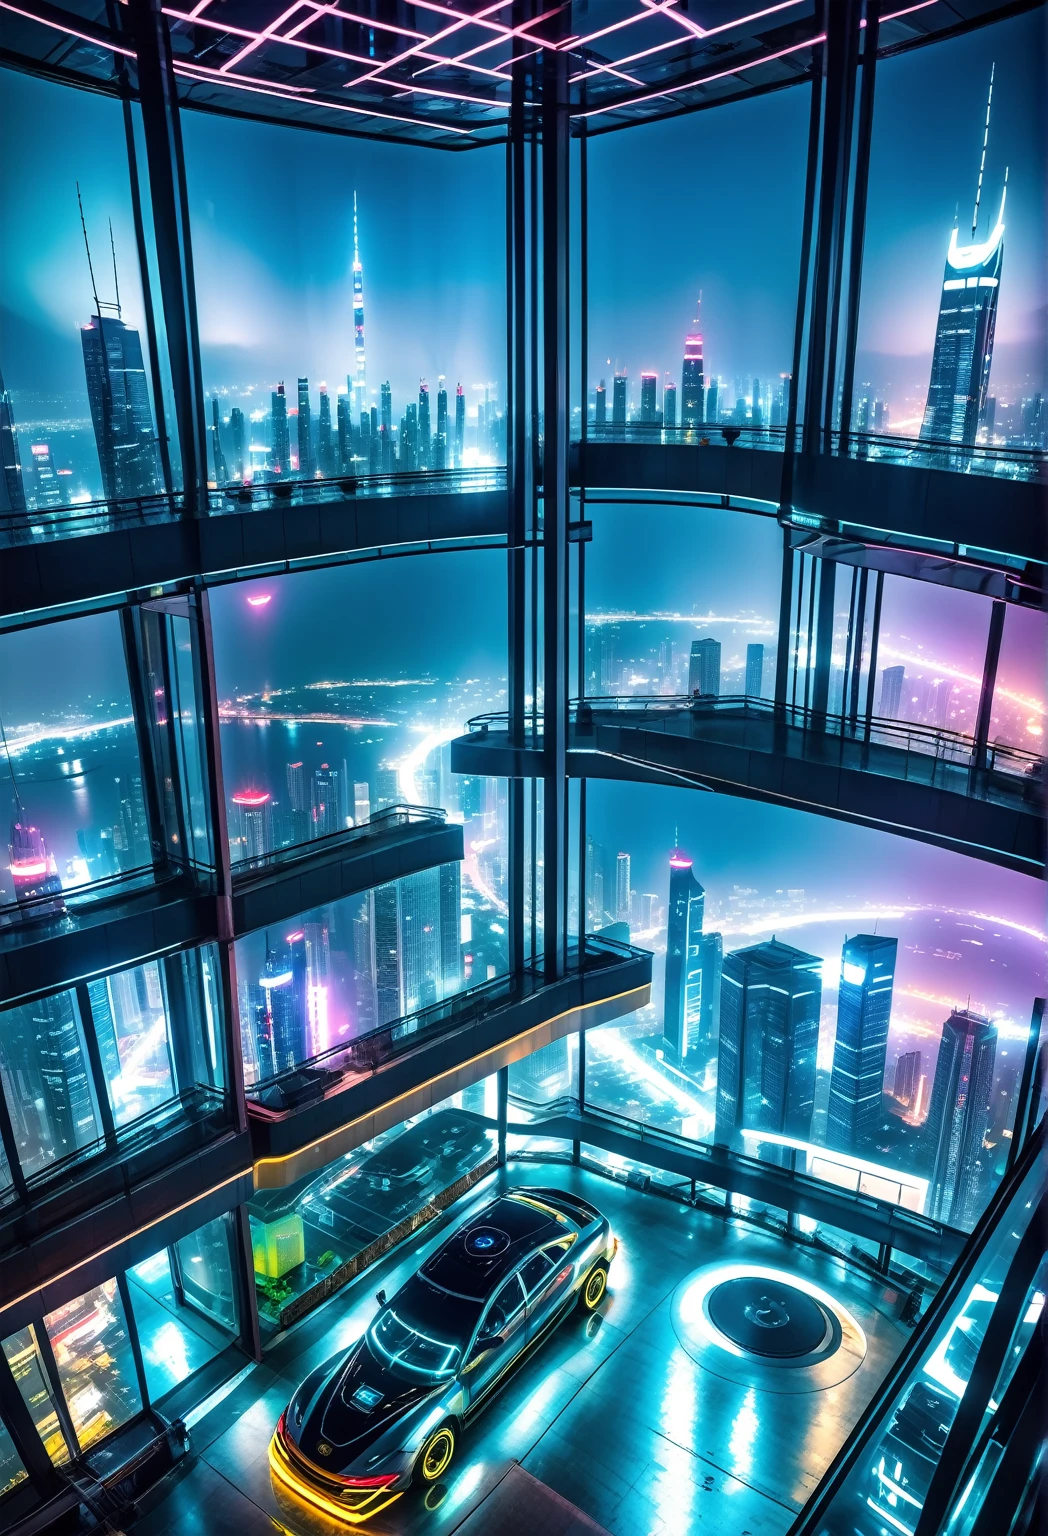 サイバーパンク風の未来都市にある高層ビルの90階にある部屋の中からの夜景, 空飛ぶ車が見えます, ネオン広告, 霧, 汚染.